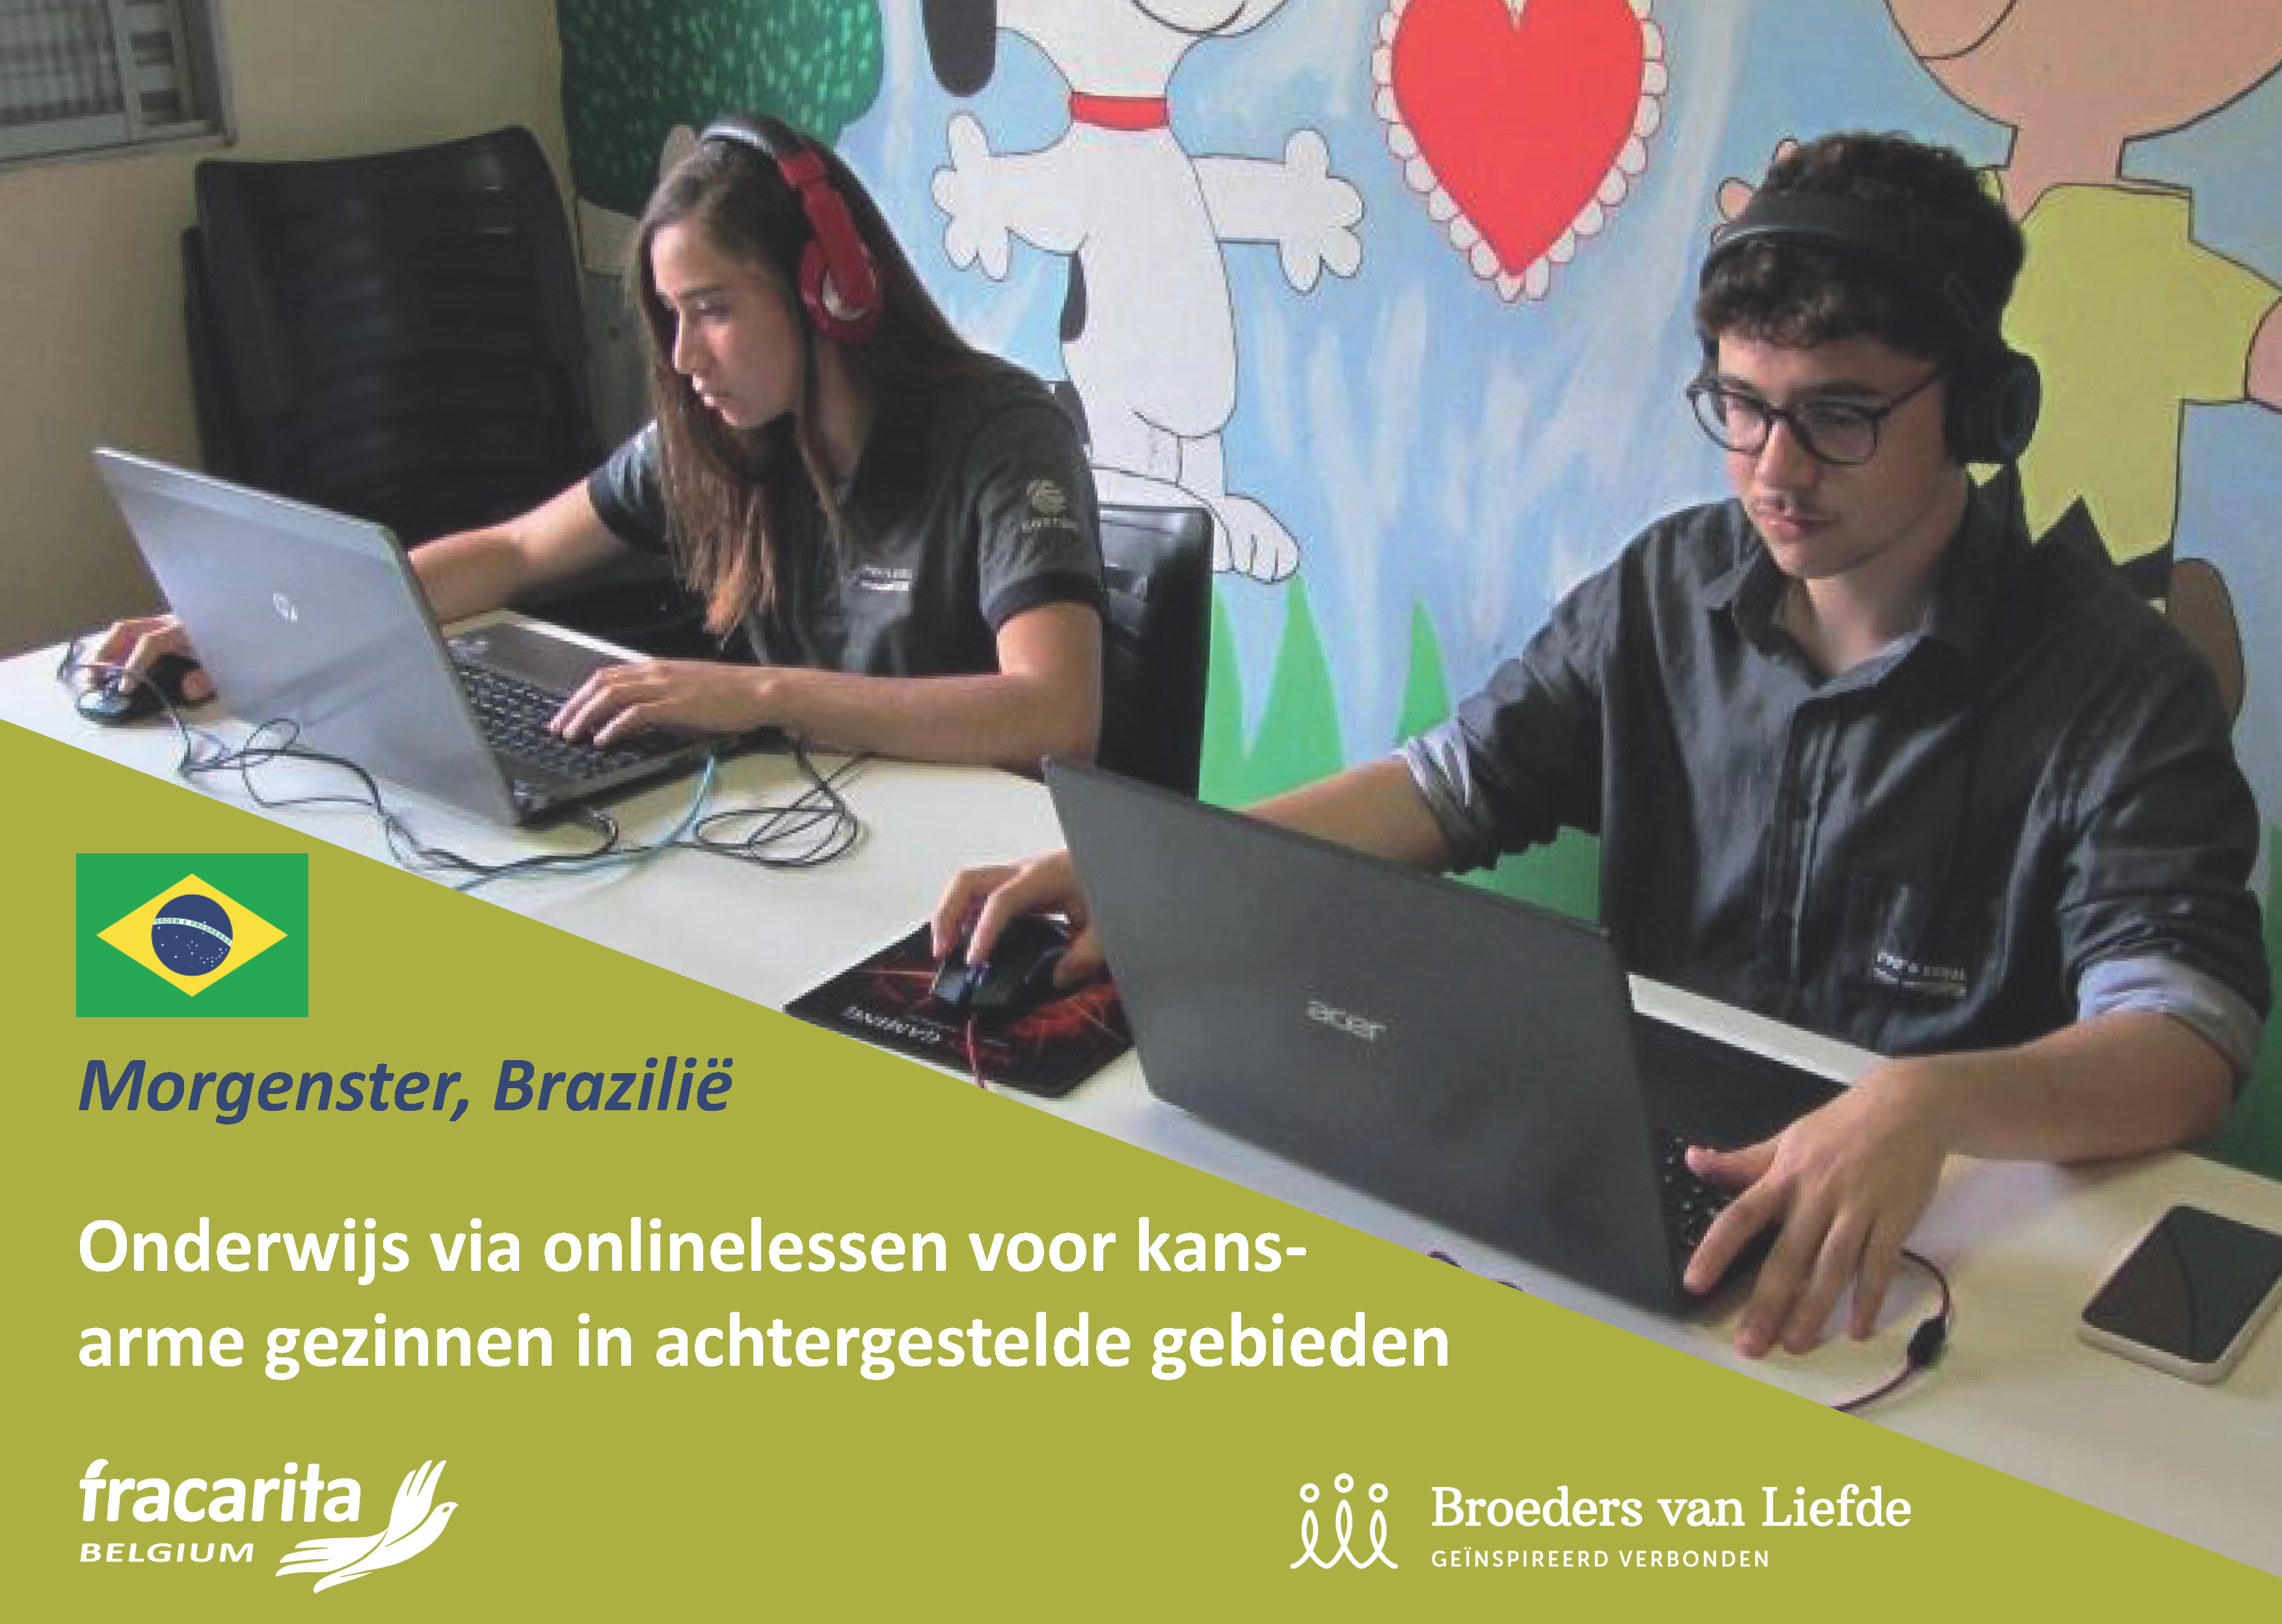 Onderwijskansen via onlinelessen voor kansarme gezinnen in afgelegen gebieden in Brazilië